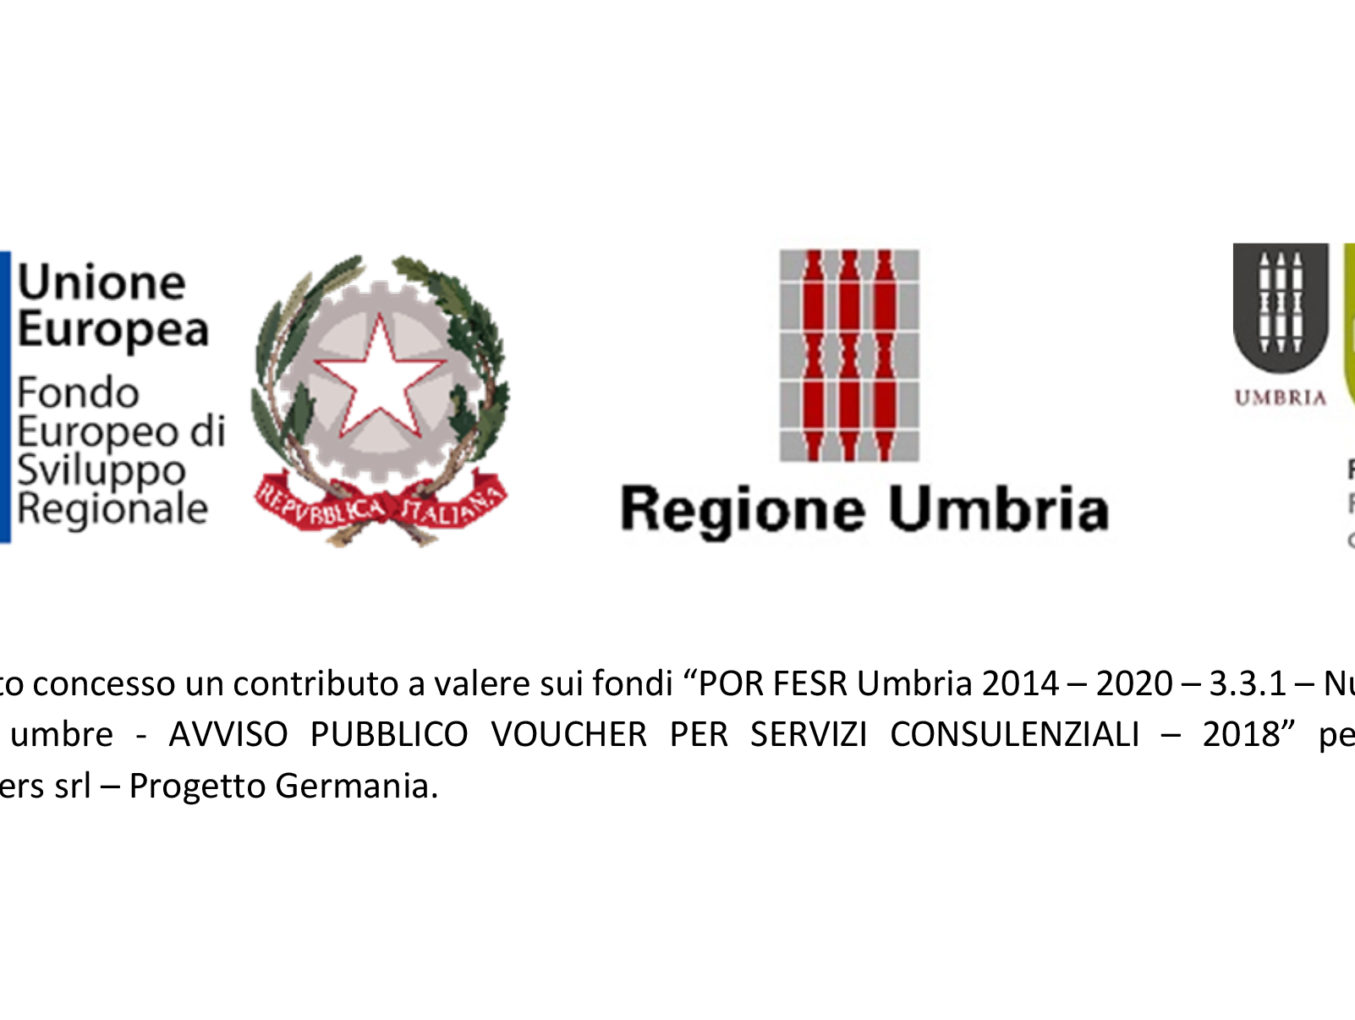 POR FESR Umbria 2014 – 2020 – 3.3.1 - Tecnokar Trailers srl – Progetto Germania